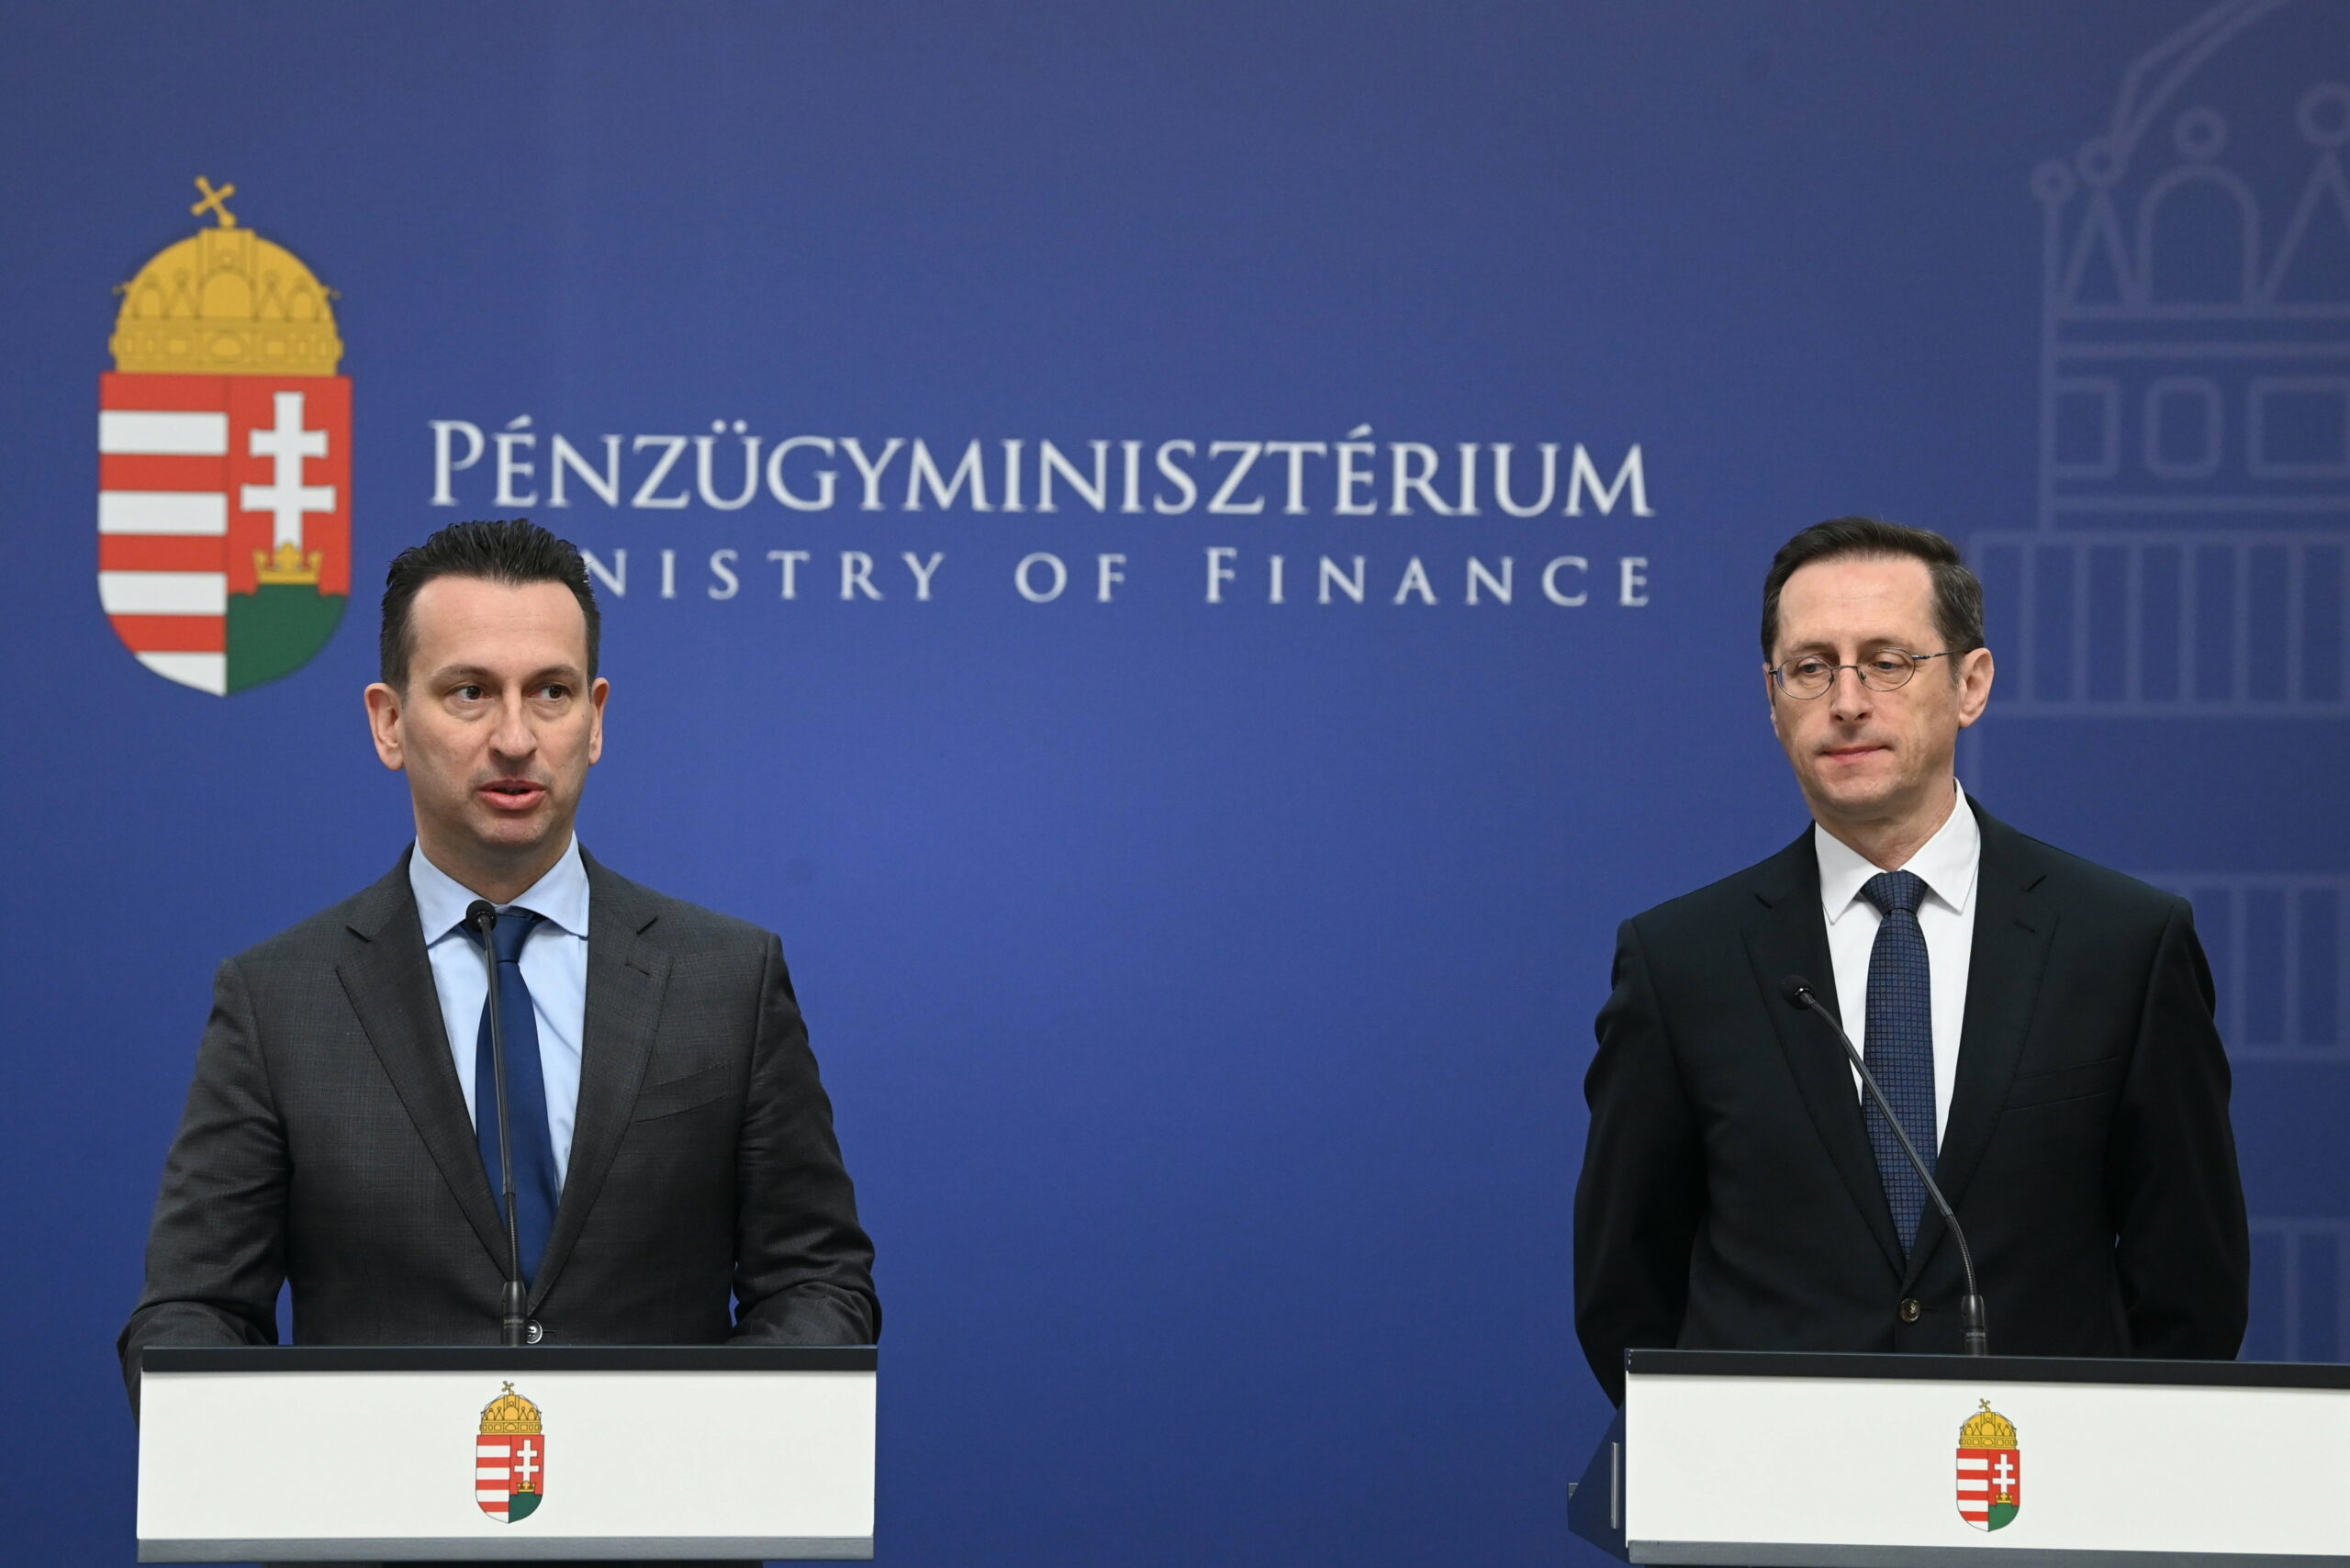 Így reagált a kormány arra, hogy negatívra módosította a magyar államadós-osztályzat kilátását a Fitch Ratings